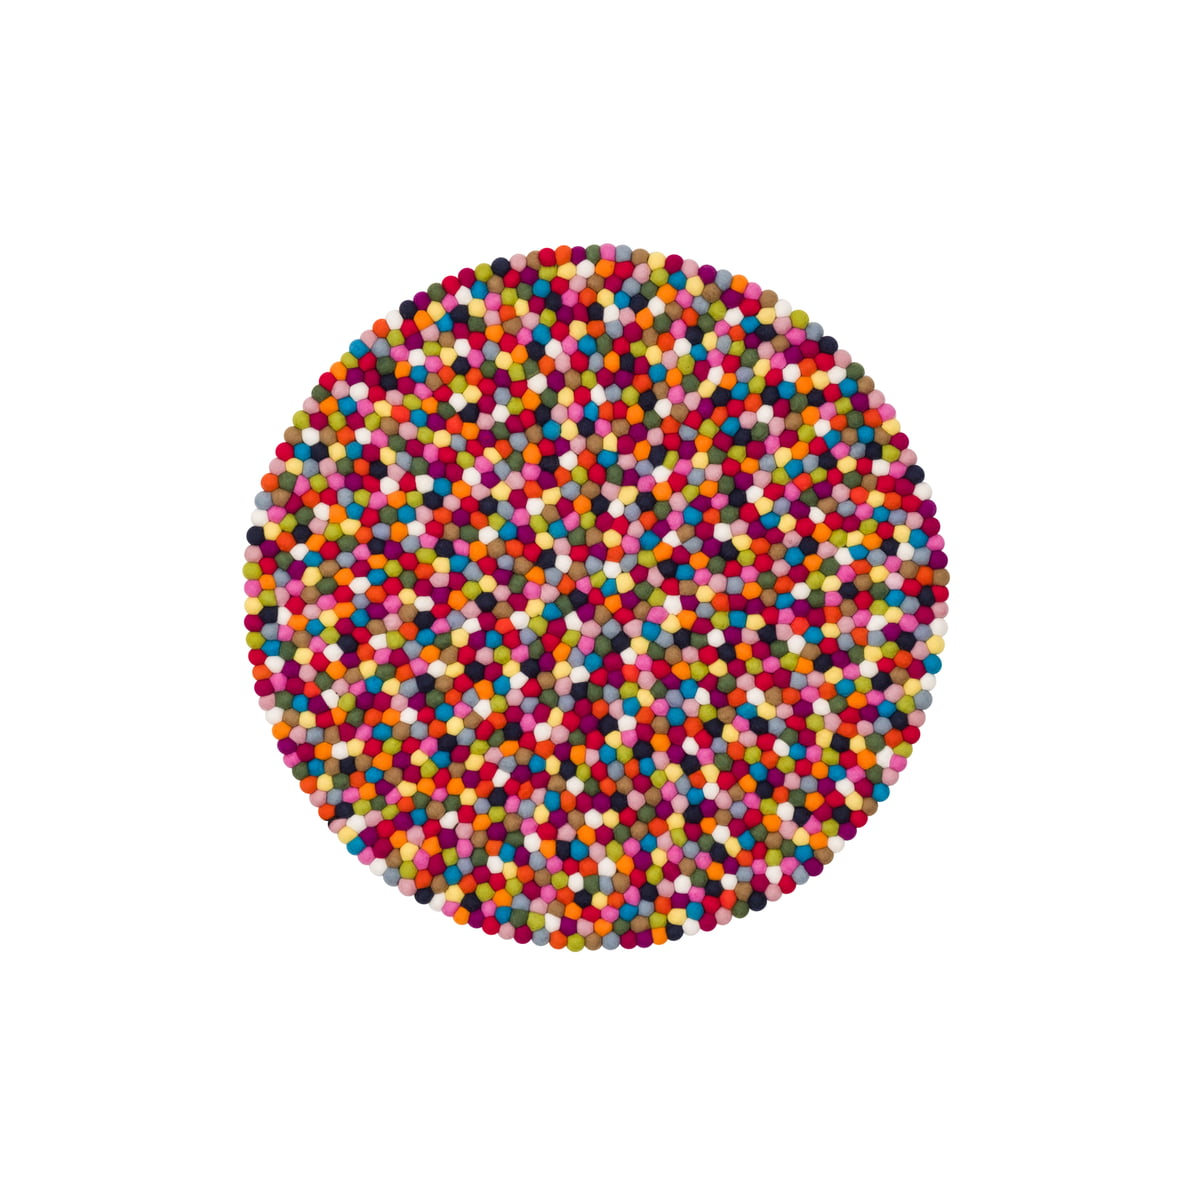 Boules de feutre Tapis 120x170 cm myfelt, Lotte coloré